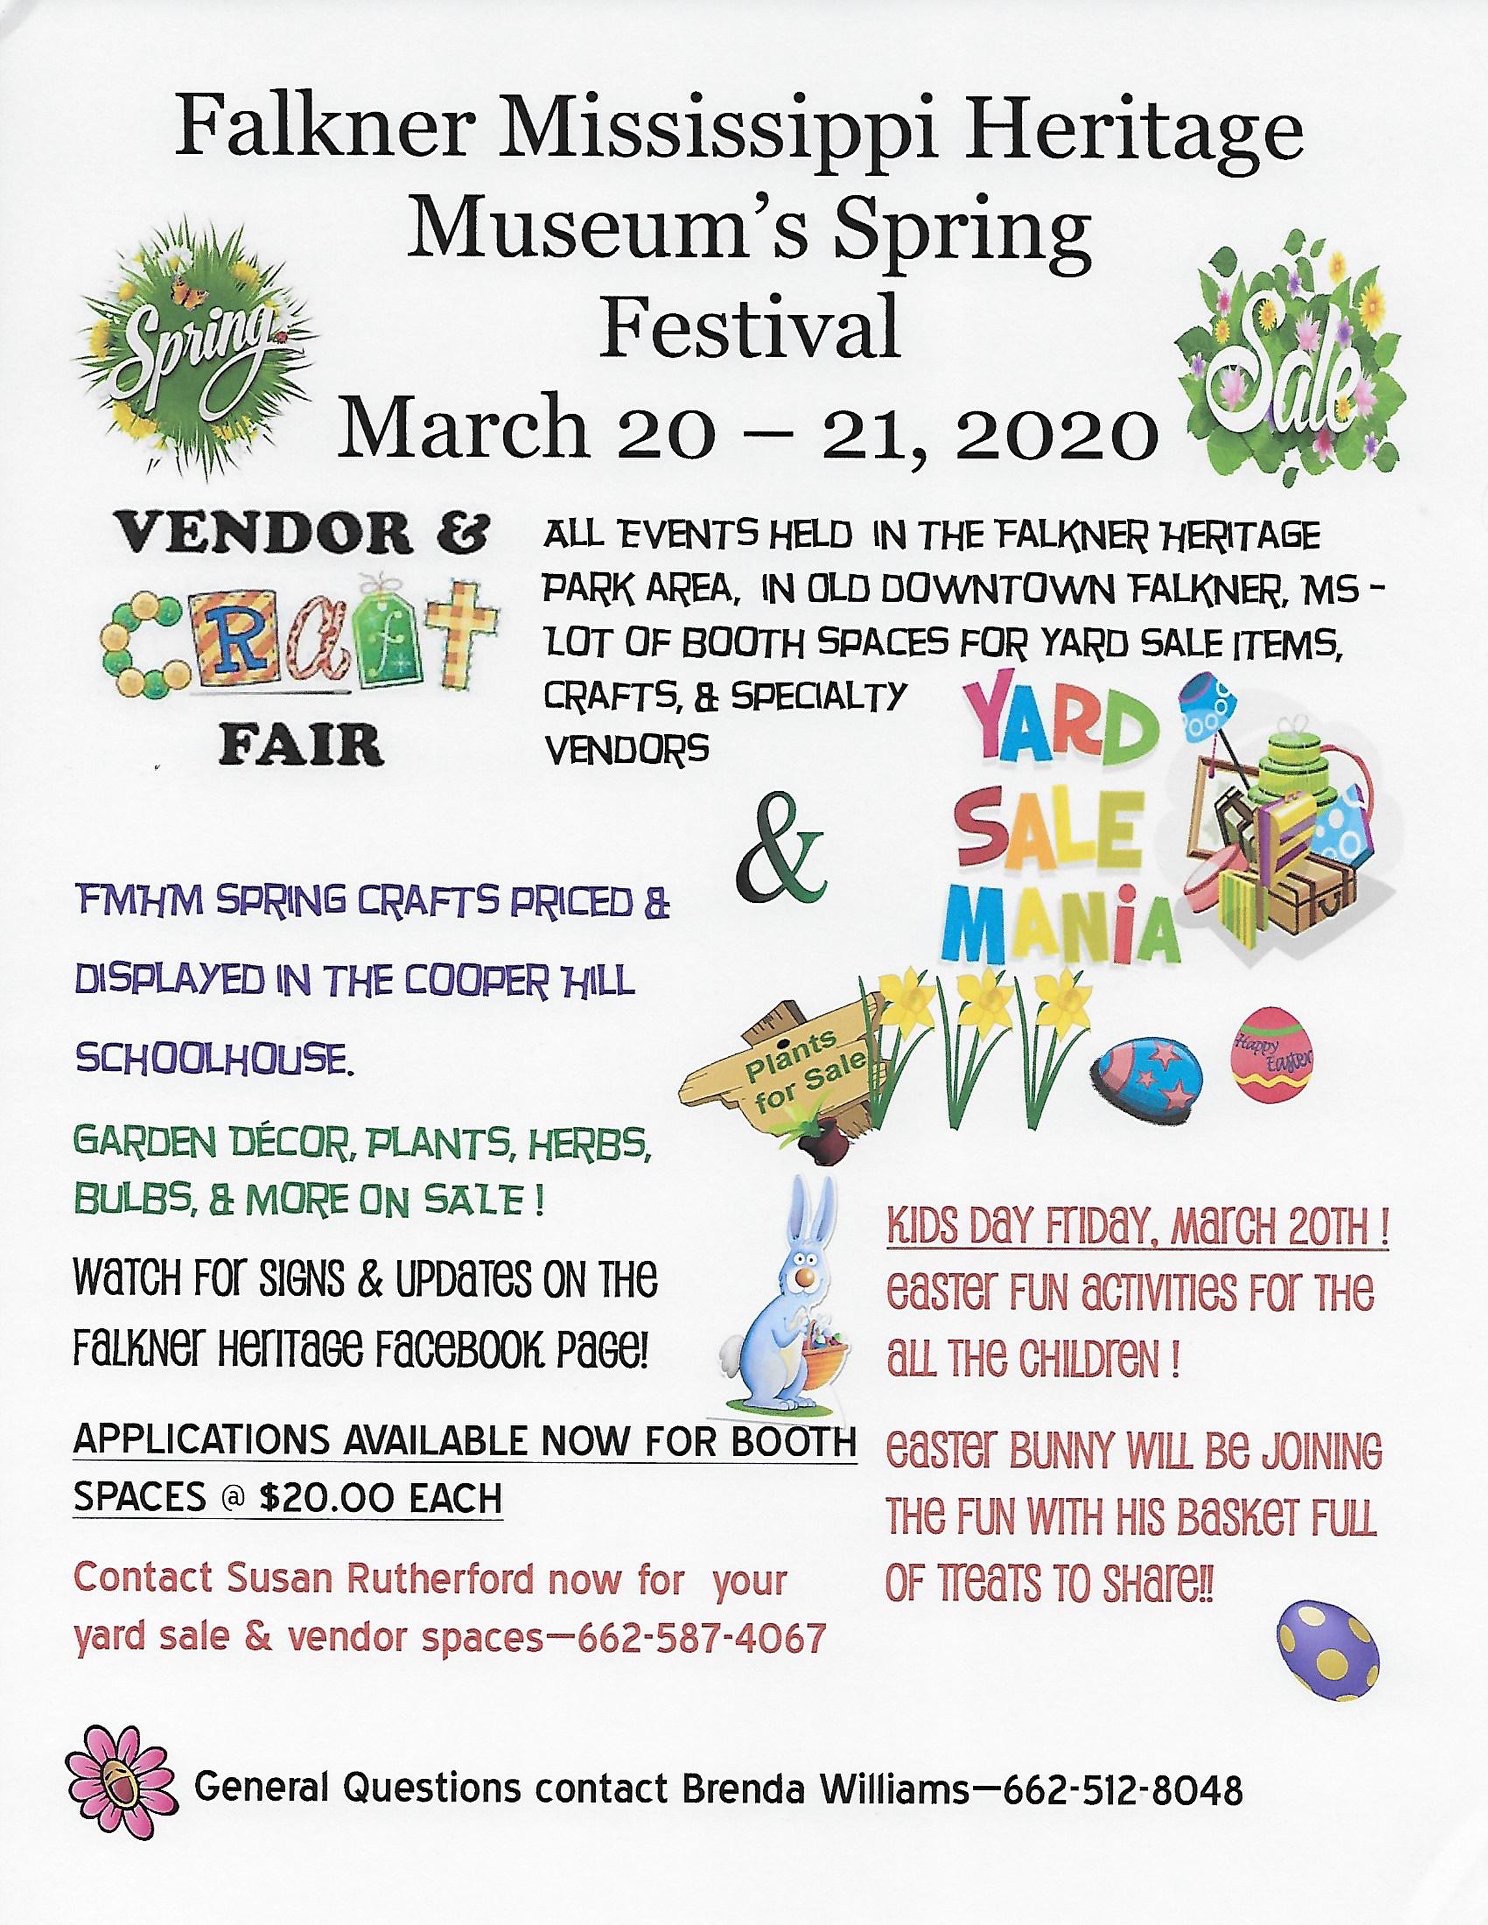 Spring Fest 2020 Falkner Mississippi Heritage Museum